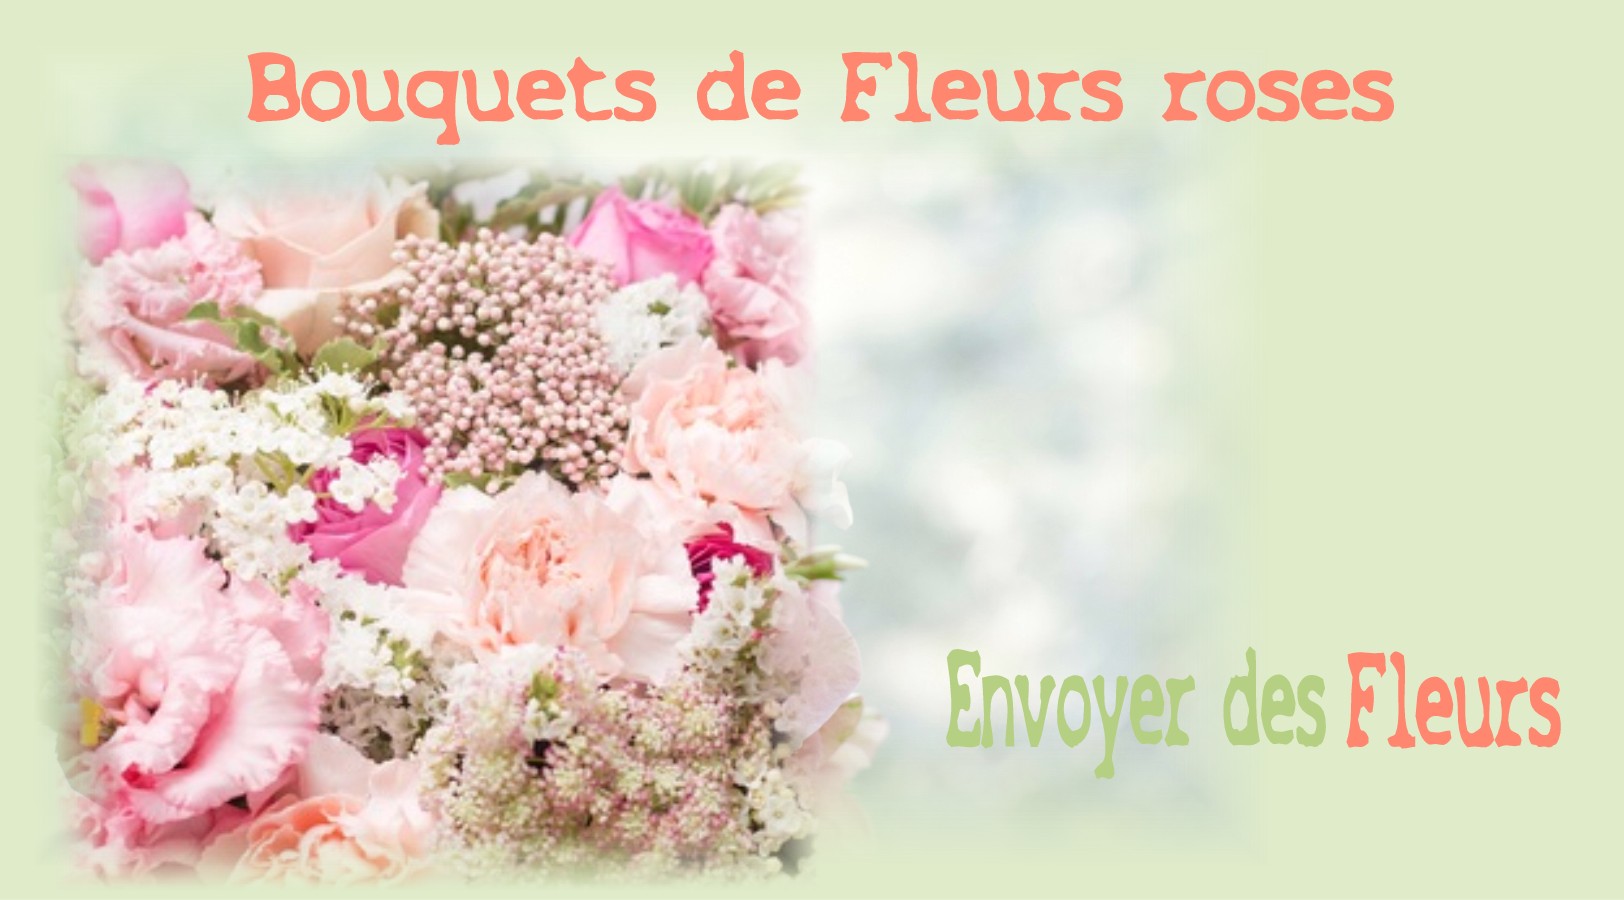 BOUQUETS DE FLEURS ROSES - FLEURISTE des ALPES MARITIMES - ENVOYER DES FLEURS